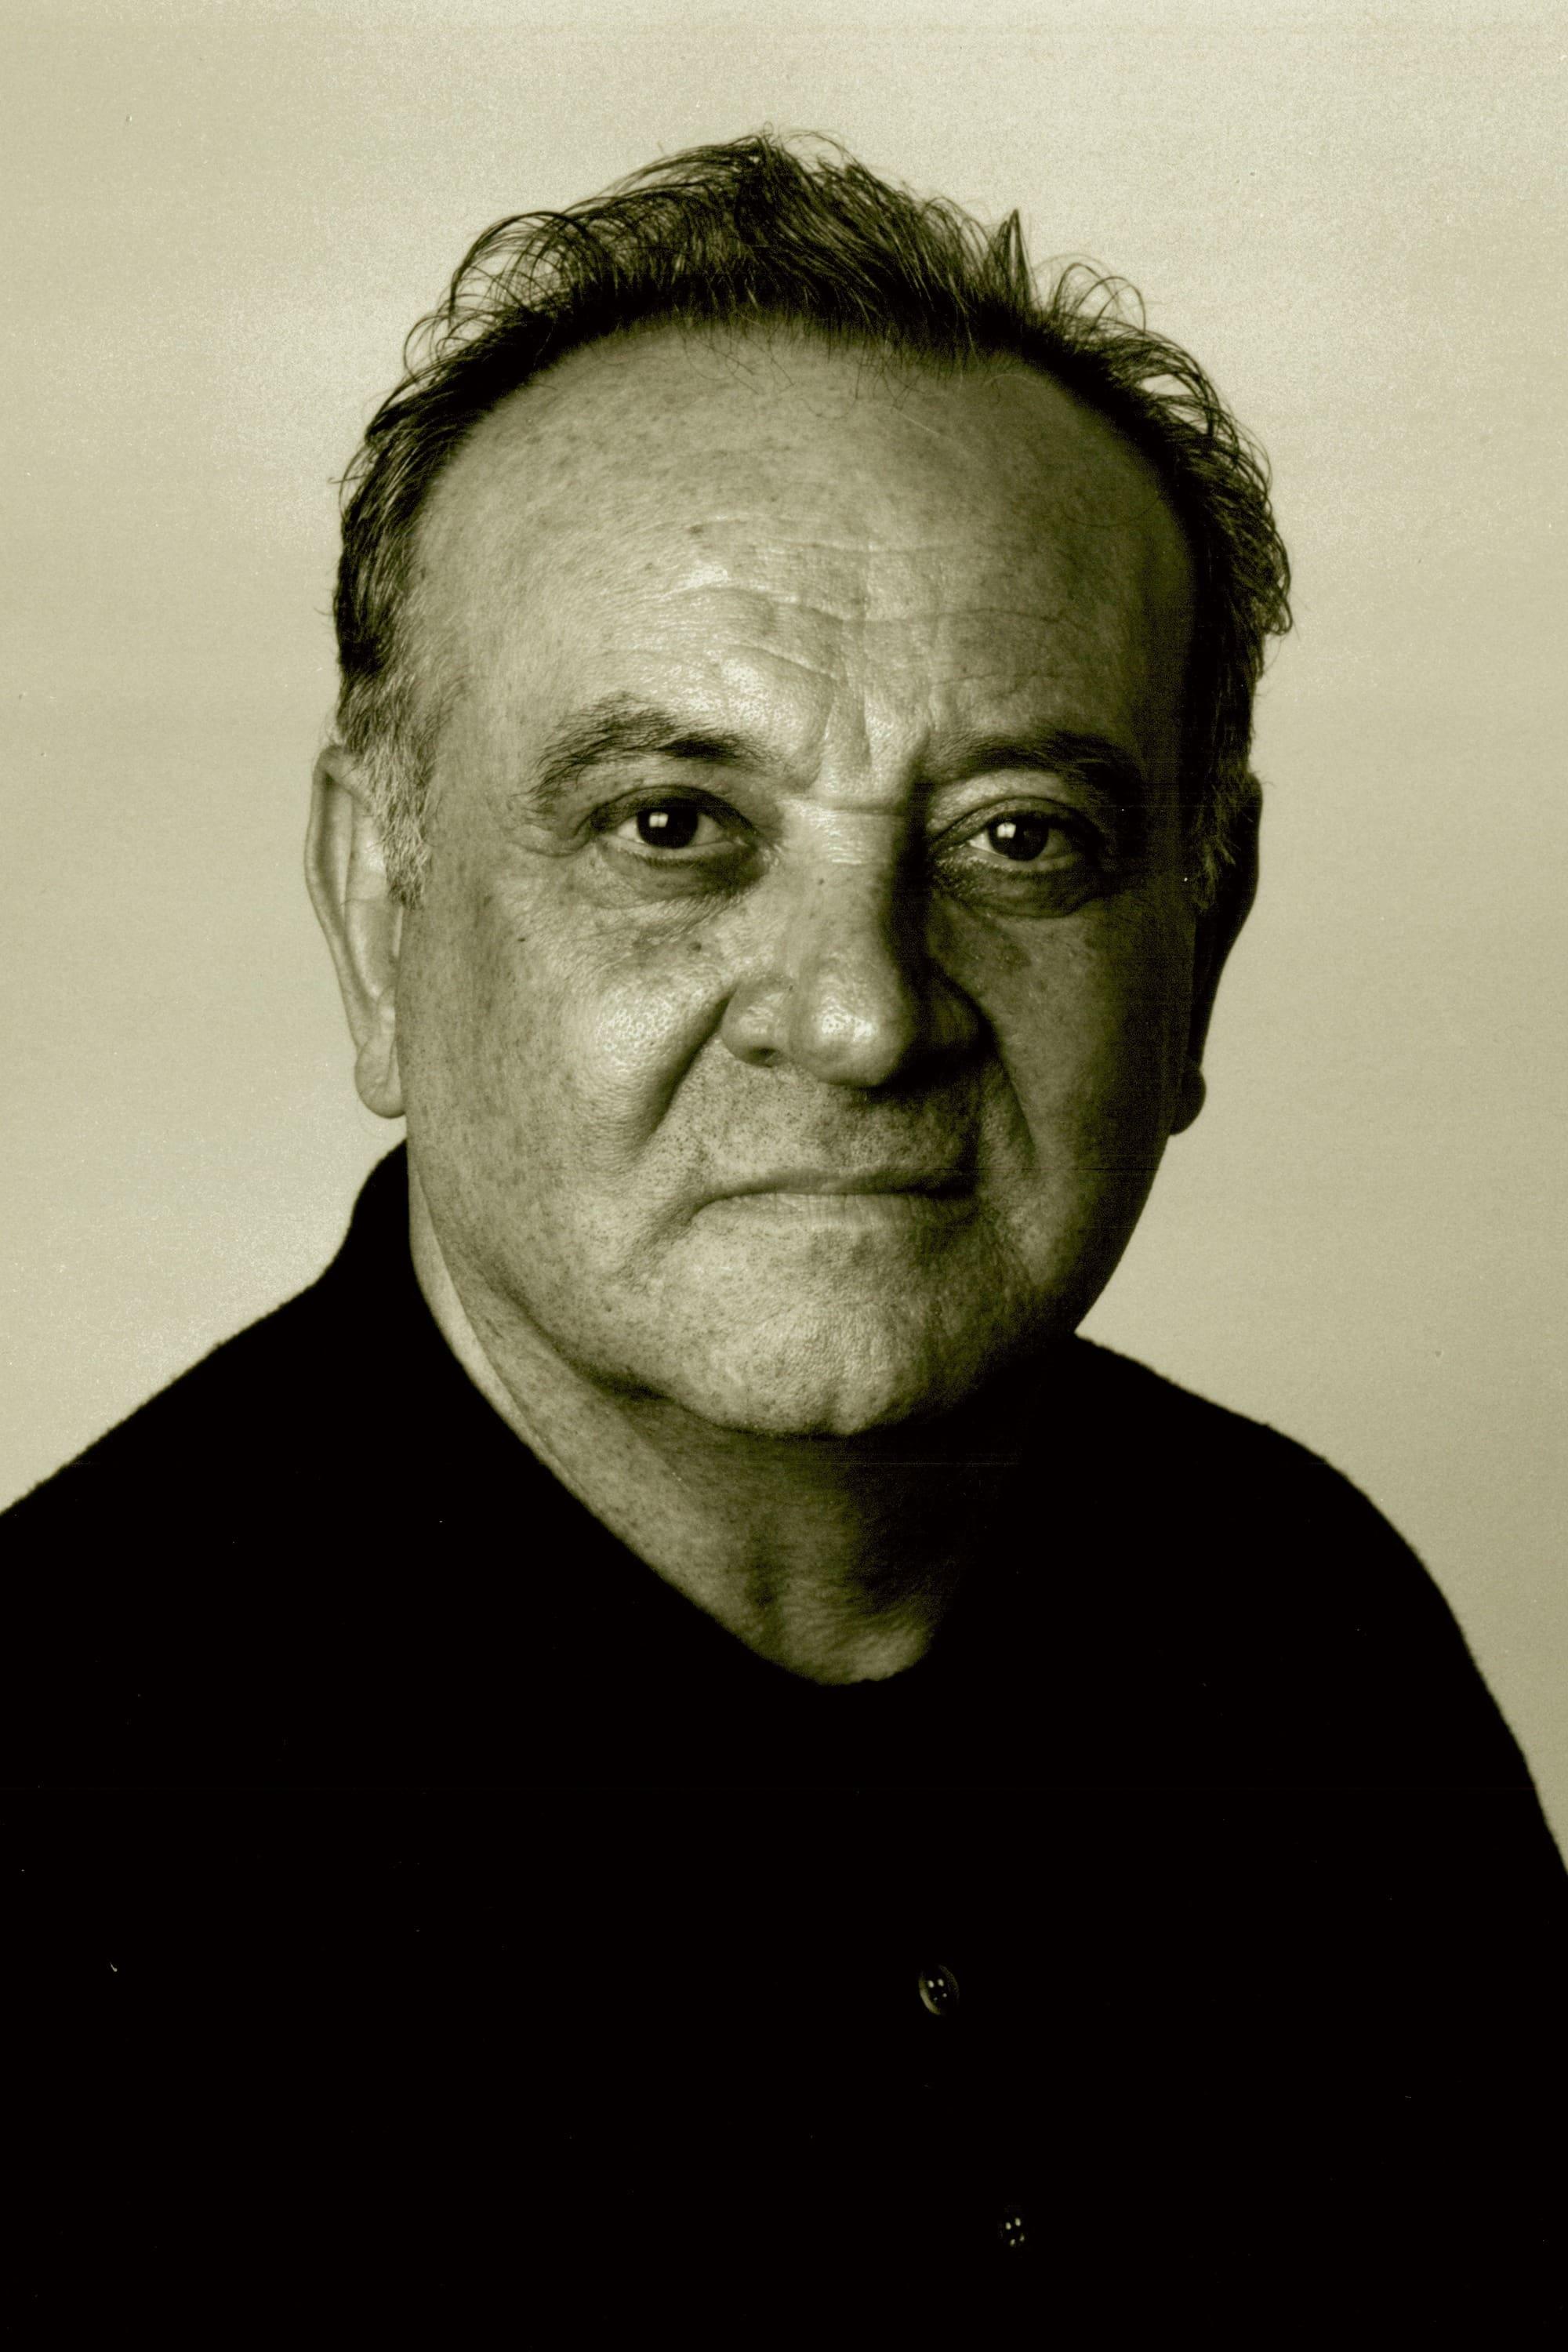 Angelo Badalamenti | Original Music Composer